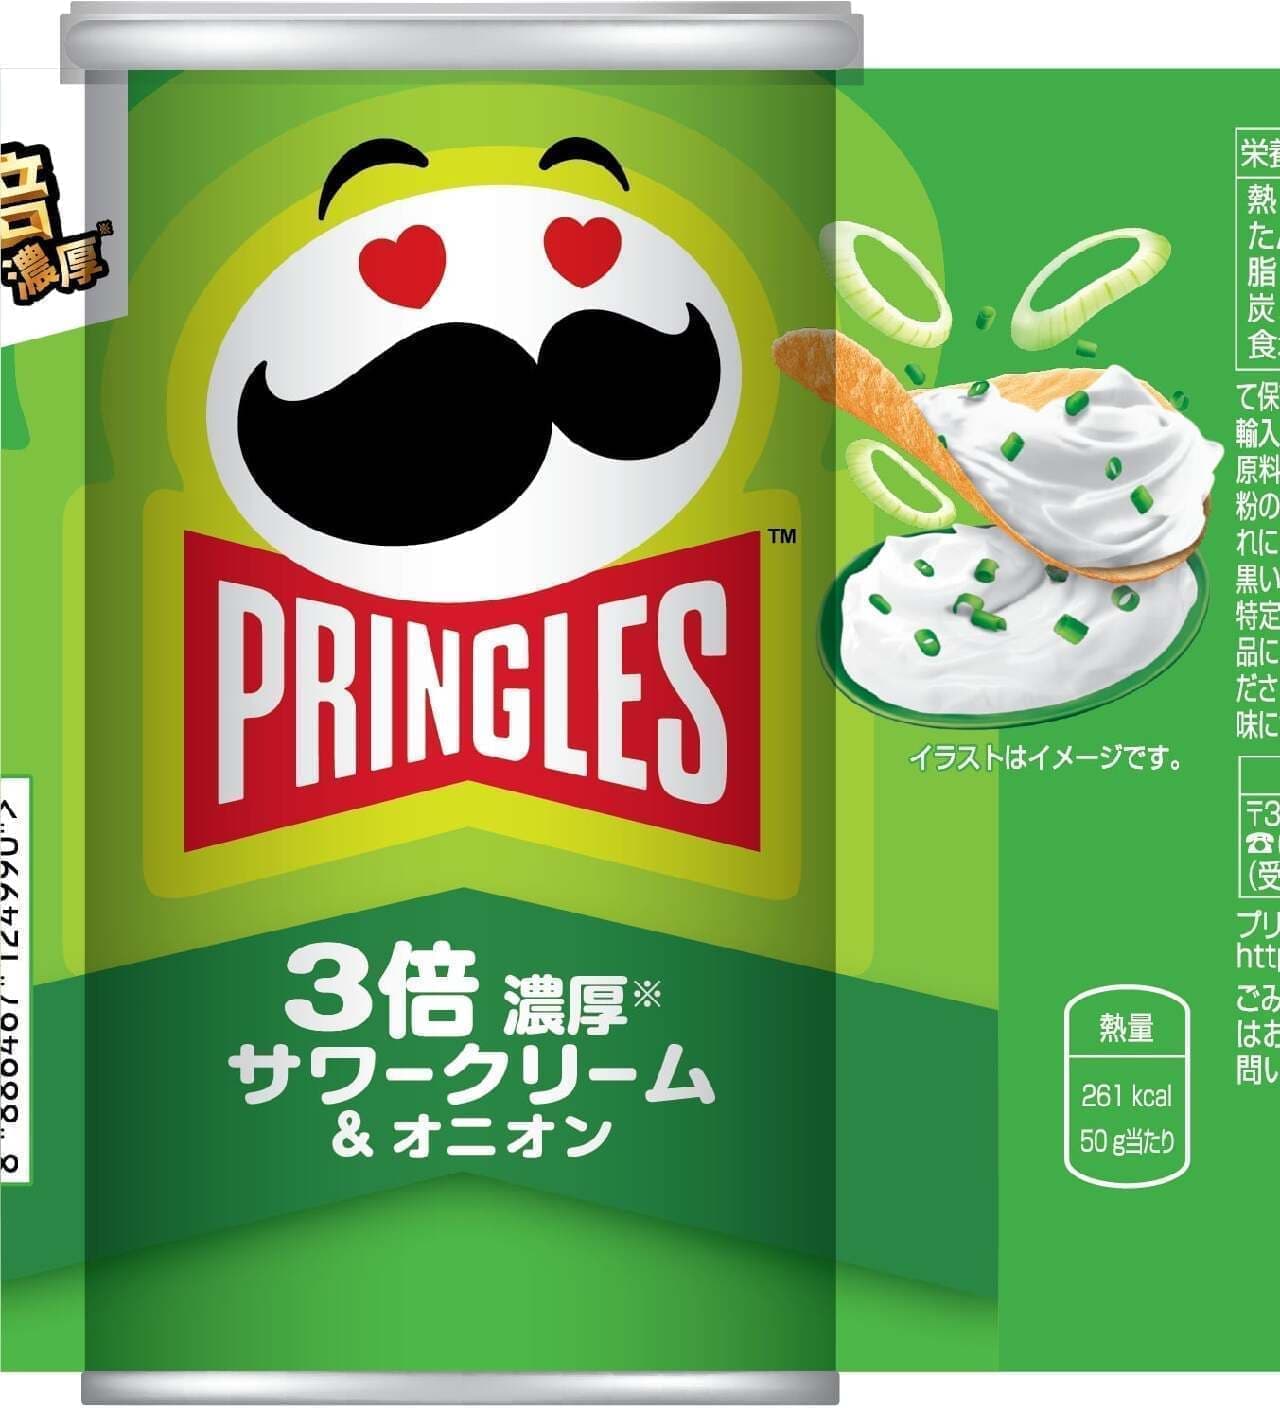 Pringles 3x Thick Sour Cream & Onion